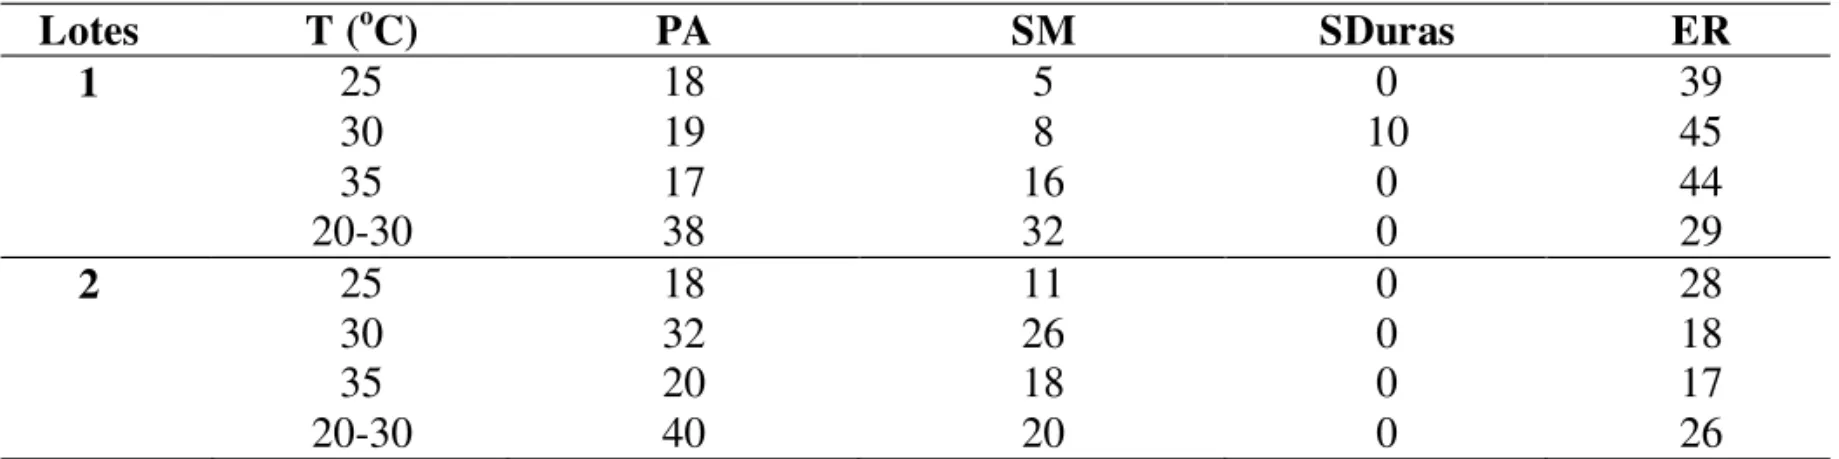 TABELA 2. Porcentagens de plântulas anormais (PA), sementes mortas (SM), sementes duras (SDuras) e emergência de radícula (ER)obtidas no final do teste de germinação em dois lotes de sementes de Schizolobium parahyba, submetidos a diferentes temperaturas.